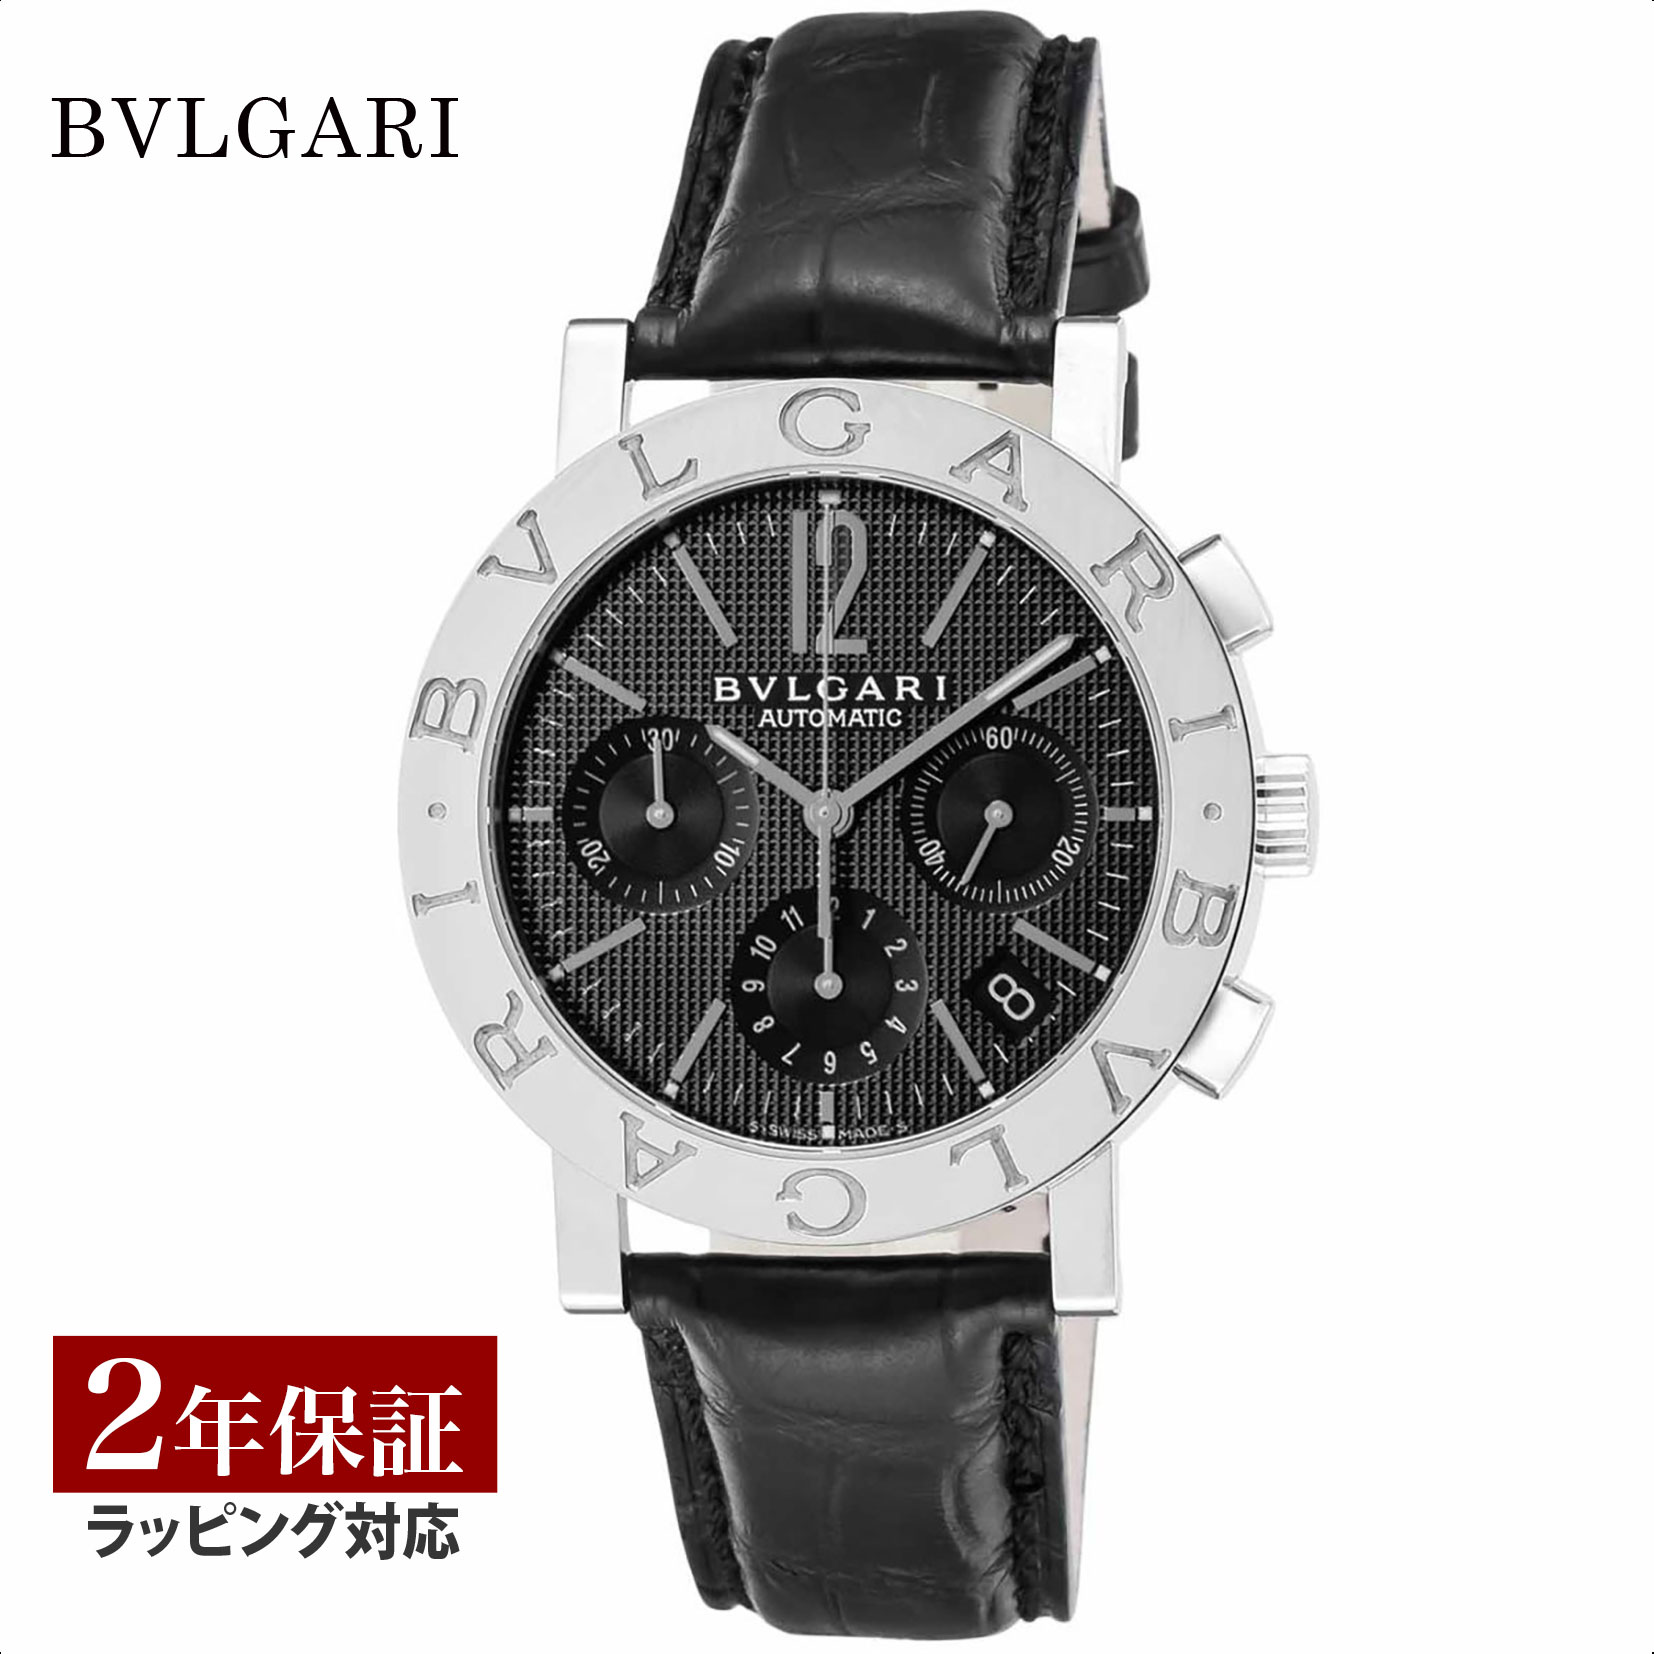 ブルガリブルガリ 腕時計（メンズ） BVLGARI ブルガリ ブルガリブルガリ 自動巻 メンズ ブラック BB38BSLDCH 時計 腕時計 高級腕時計 ブランド